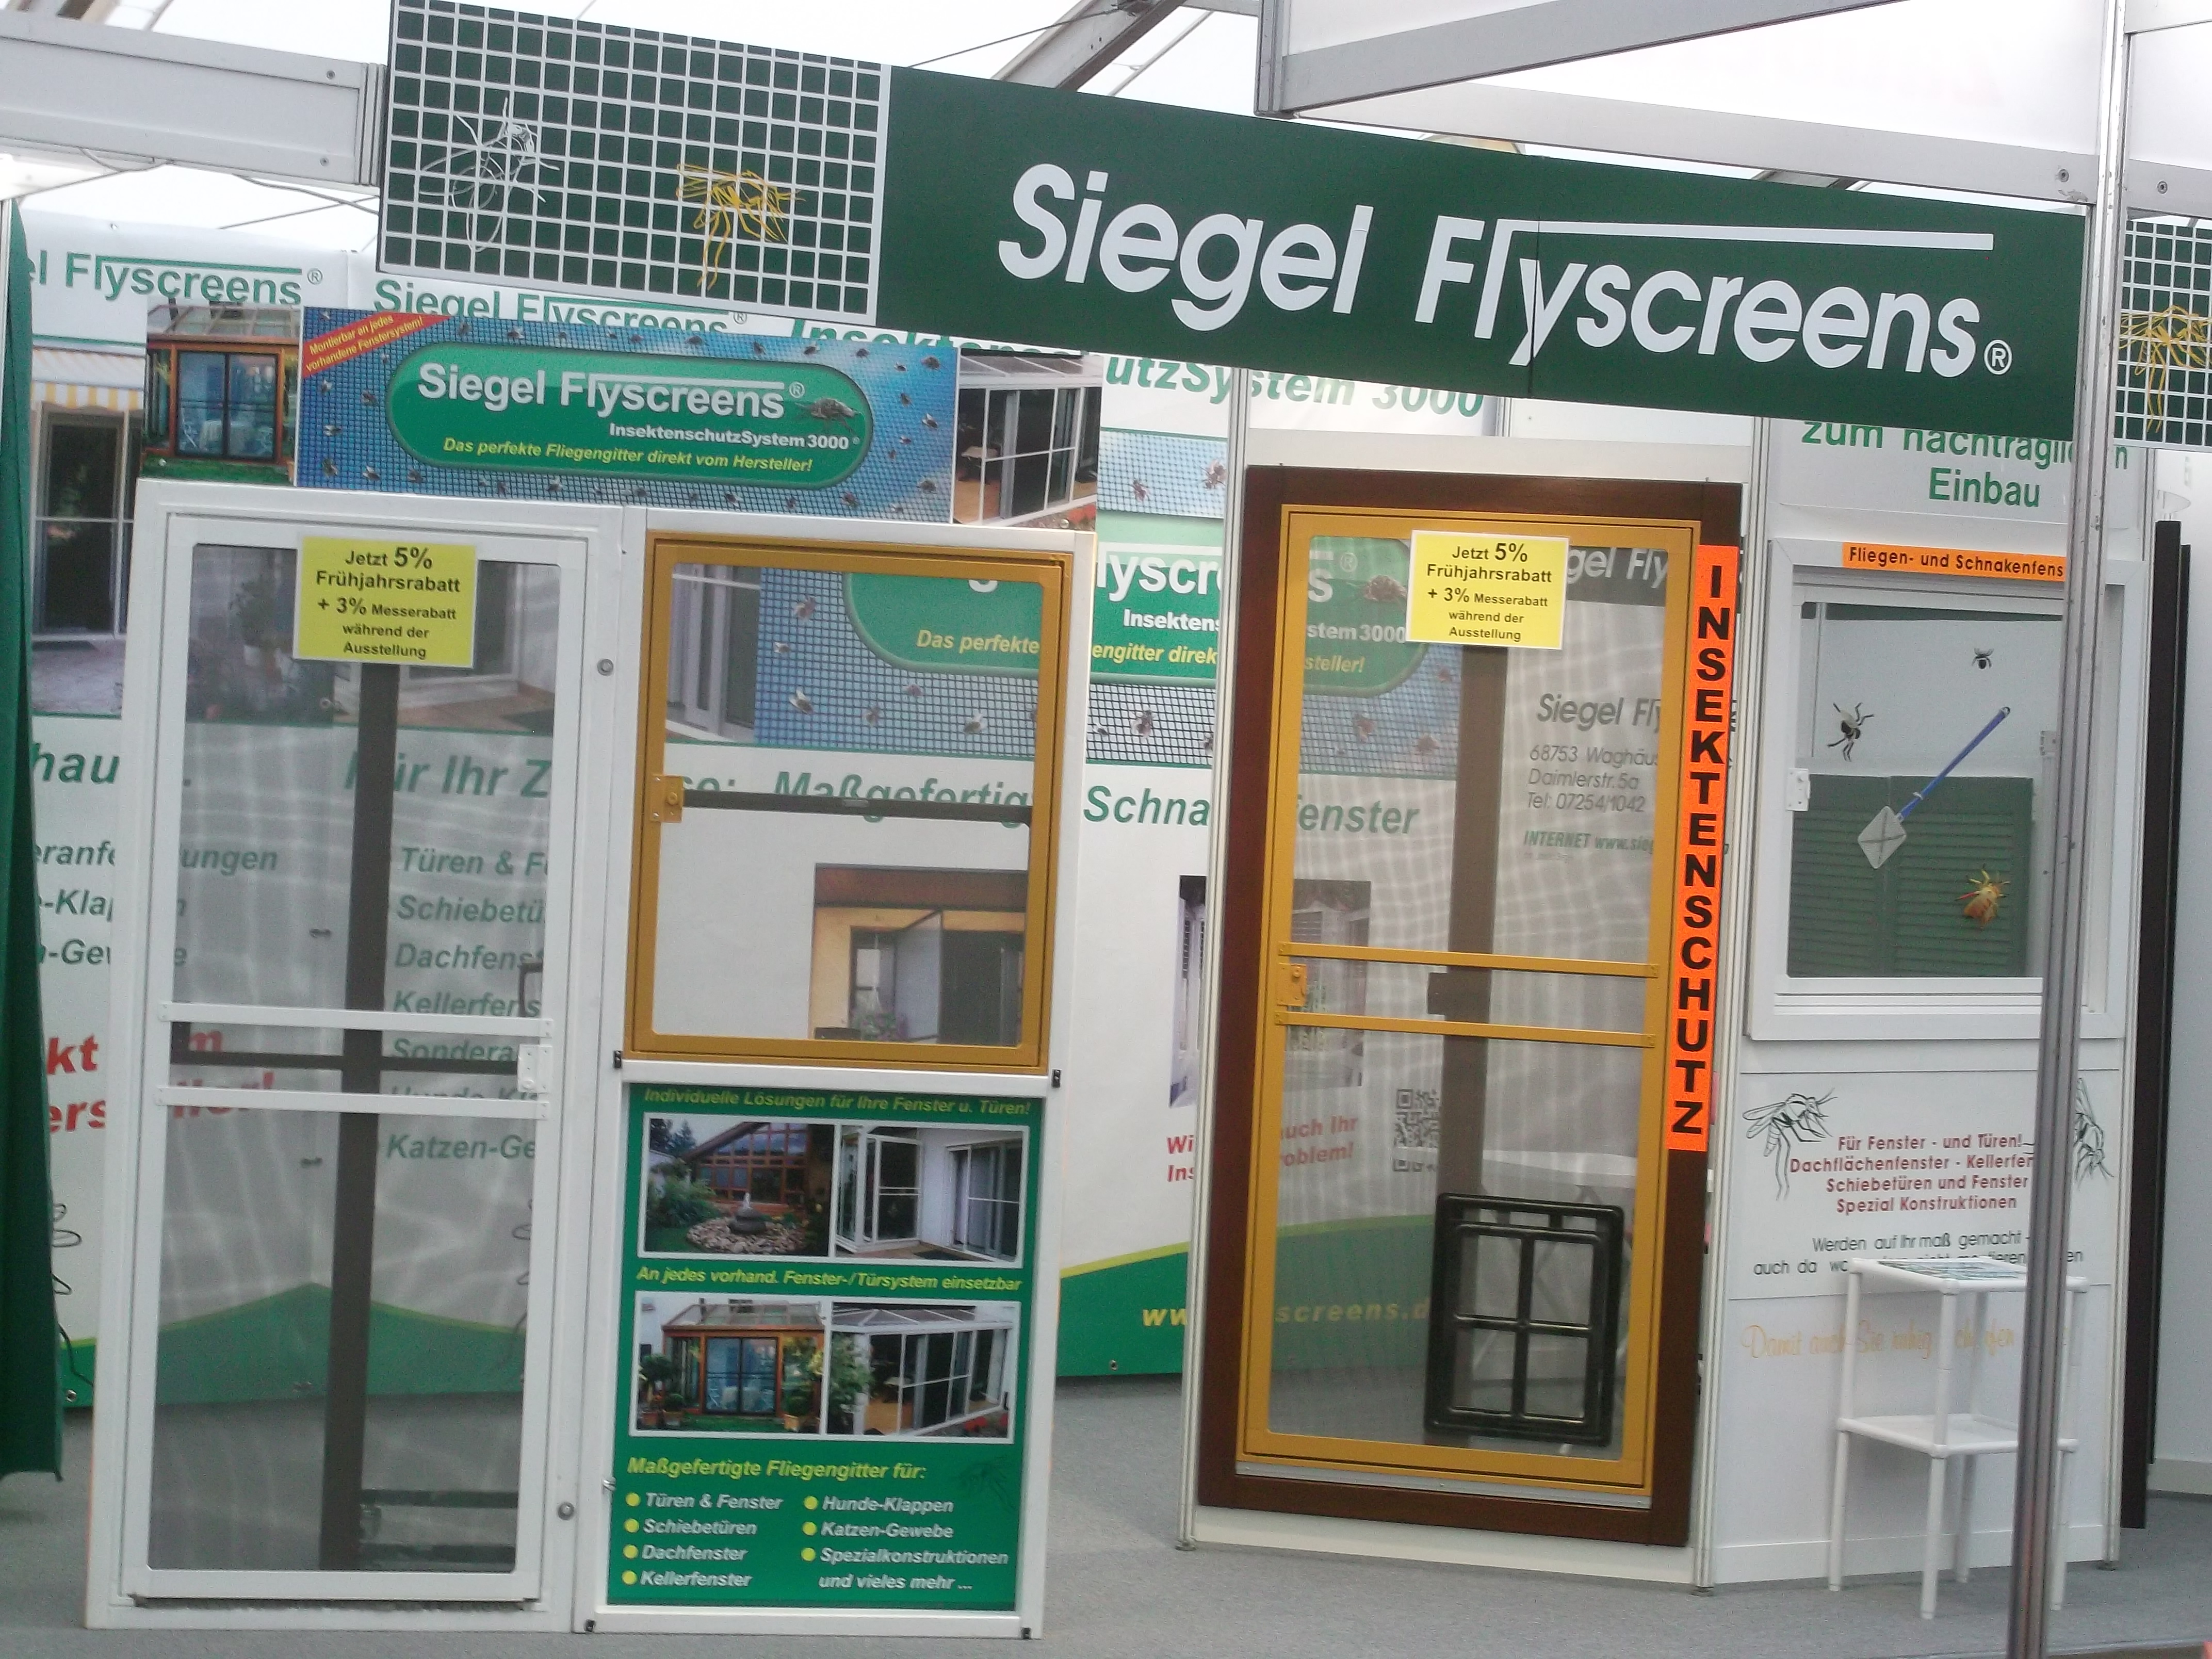 Siegel Flyscreens - Siegel Insektenschutzsystem3000 Ausstellungsstand !